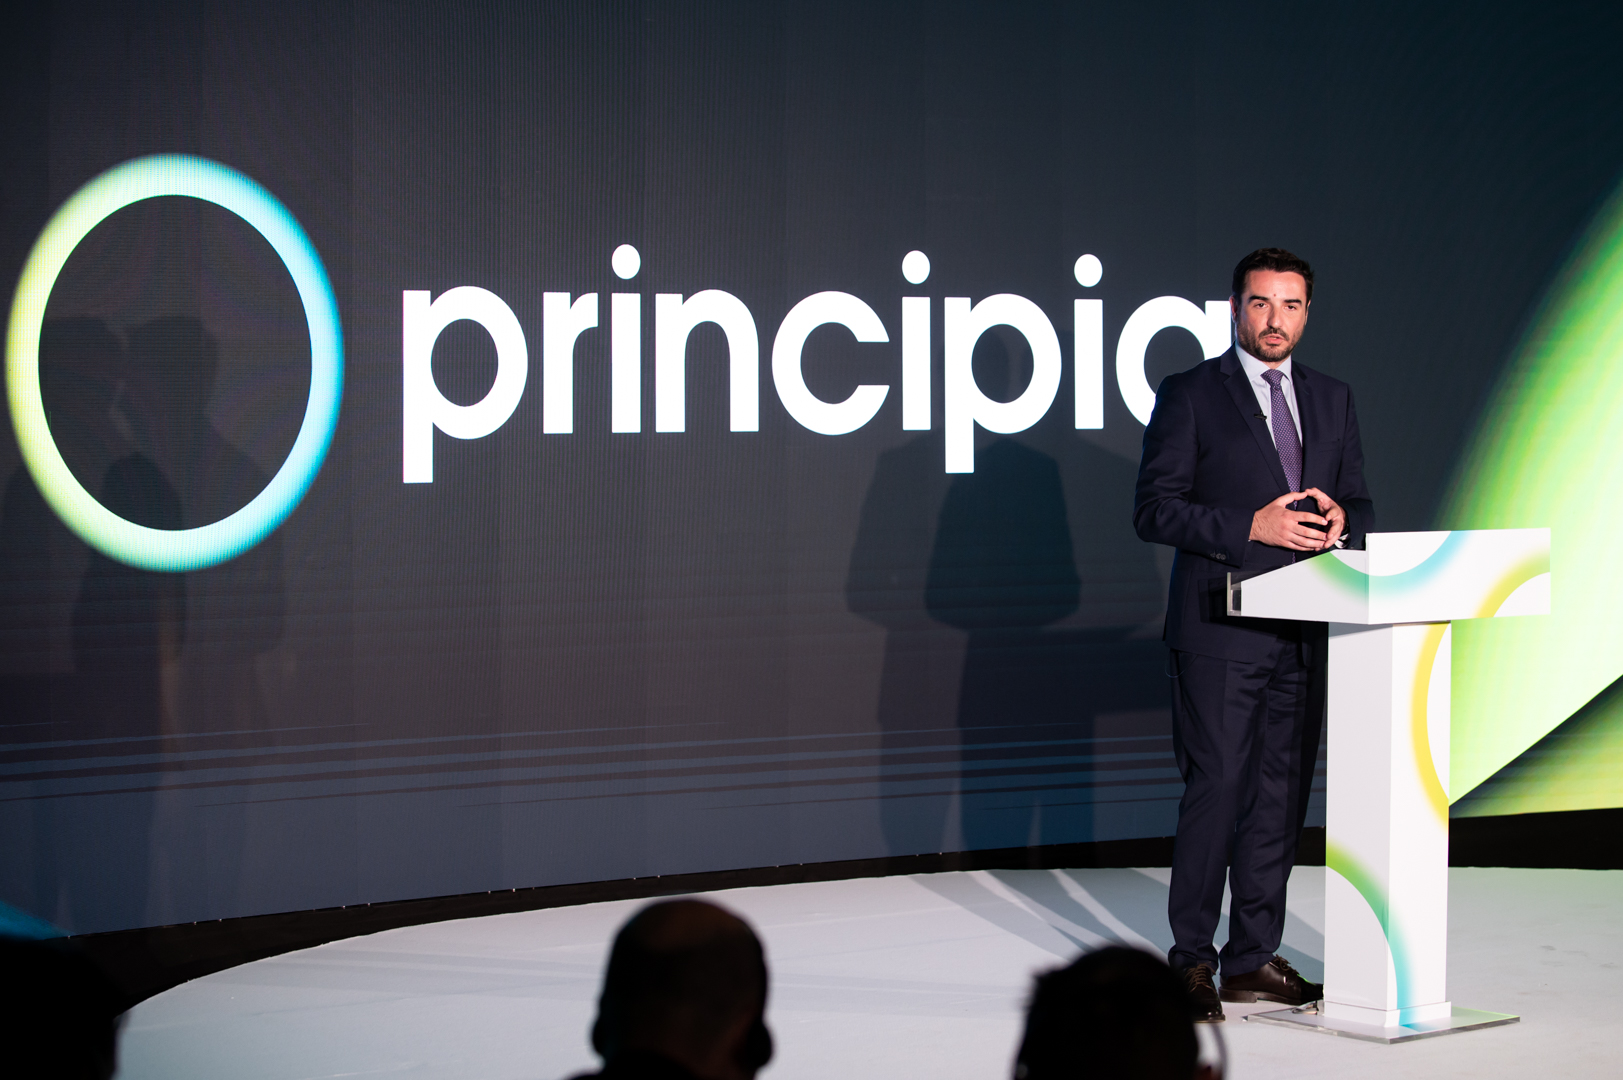 Principia: Το νέο όνομα και η εταιρική ταυτότητα της εταιρείας